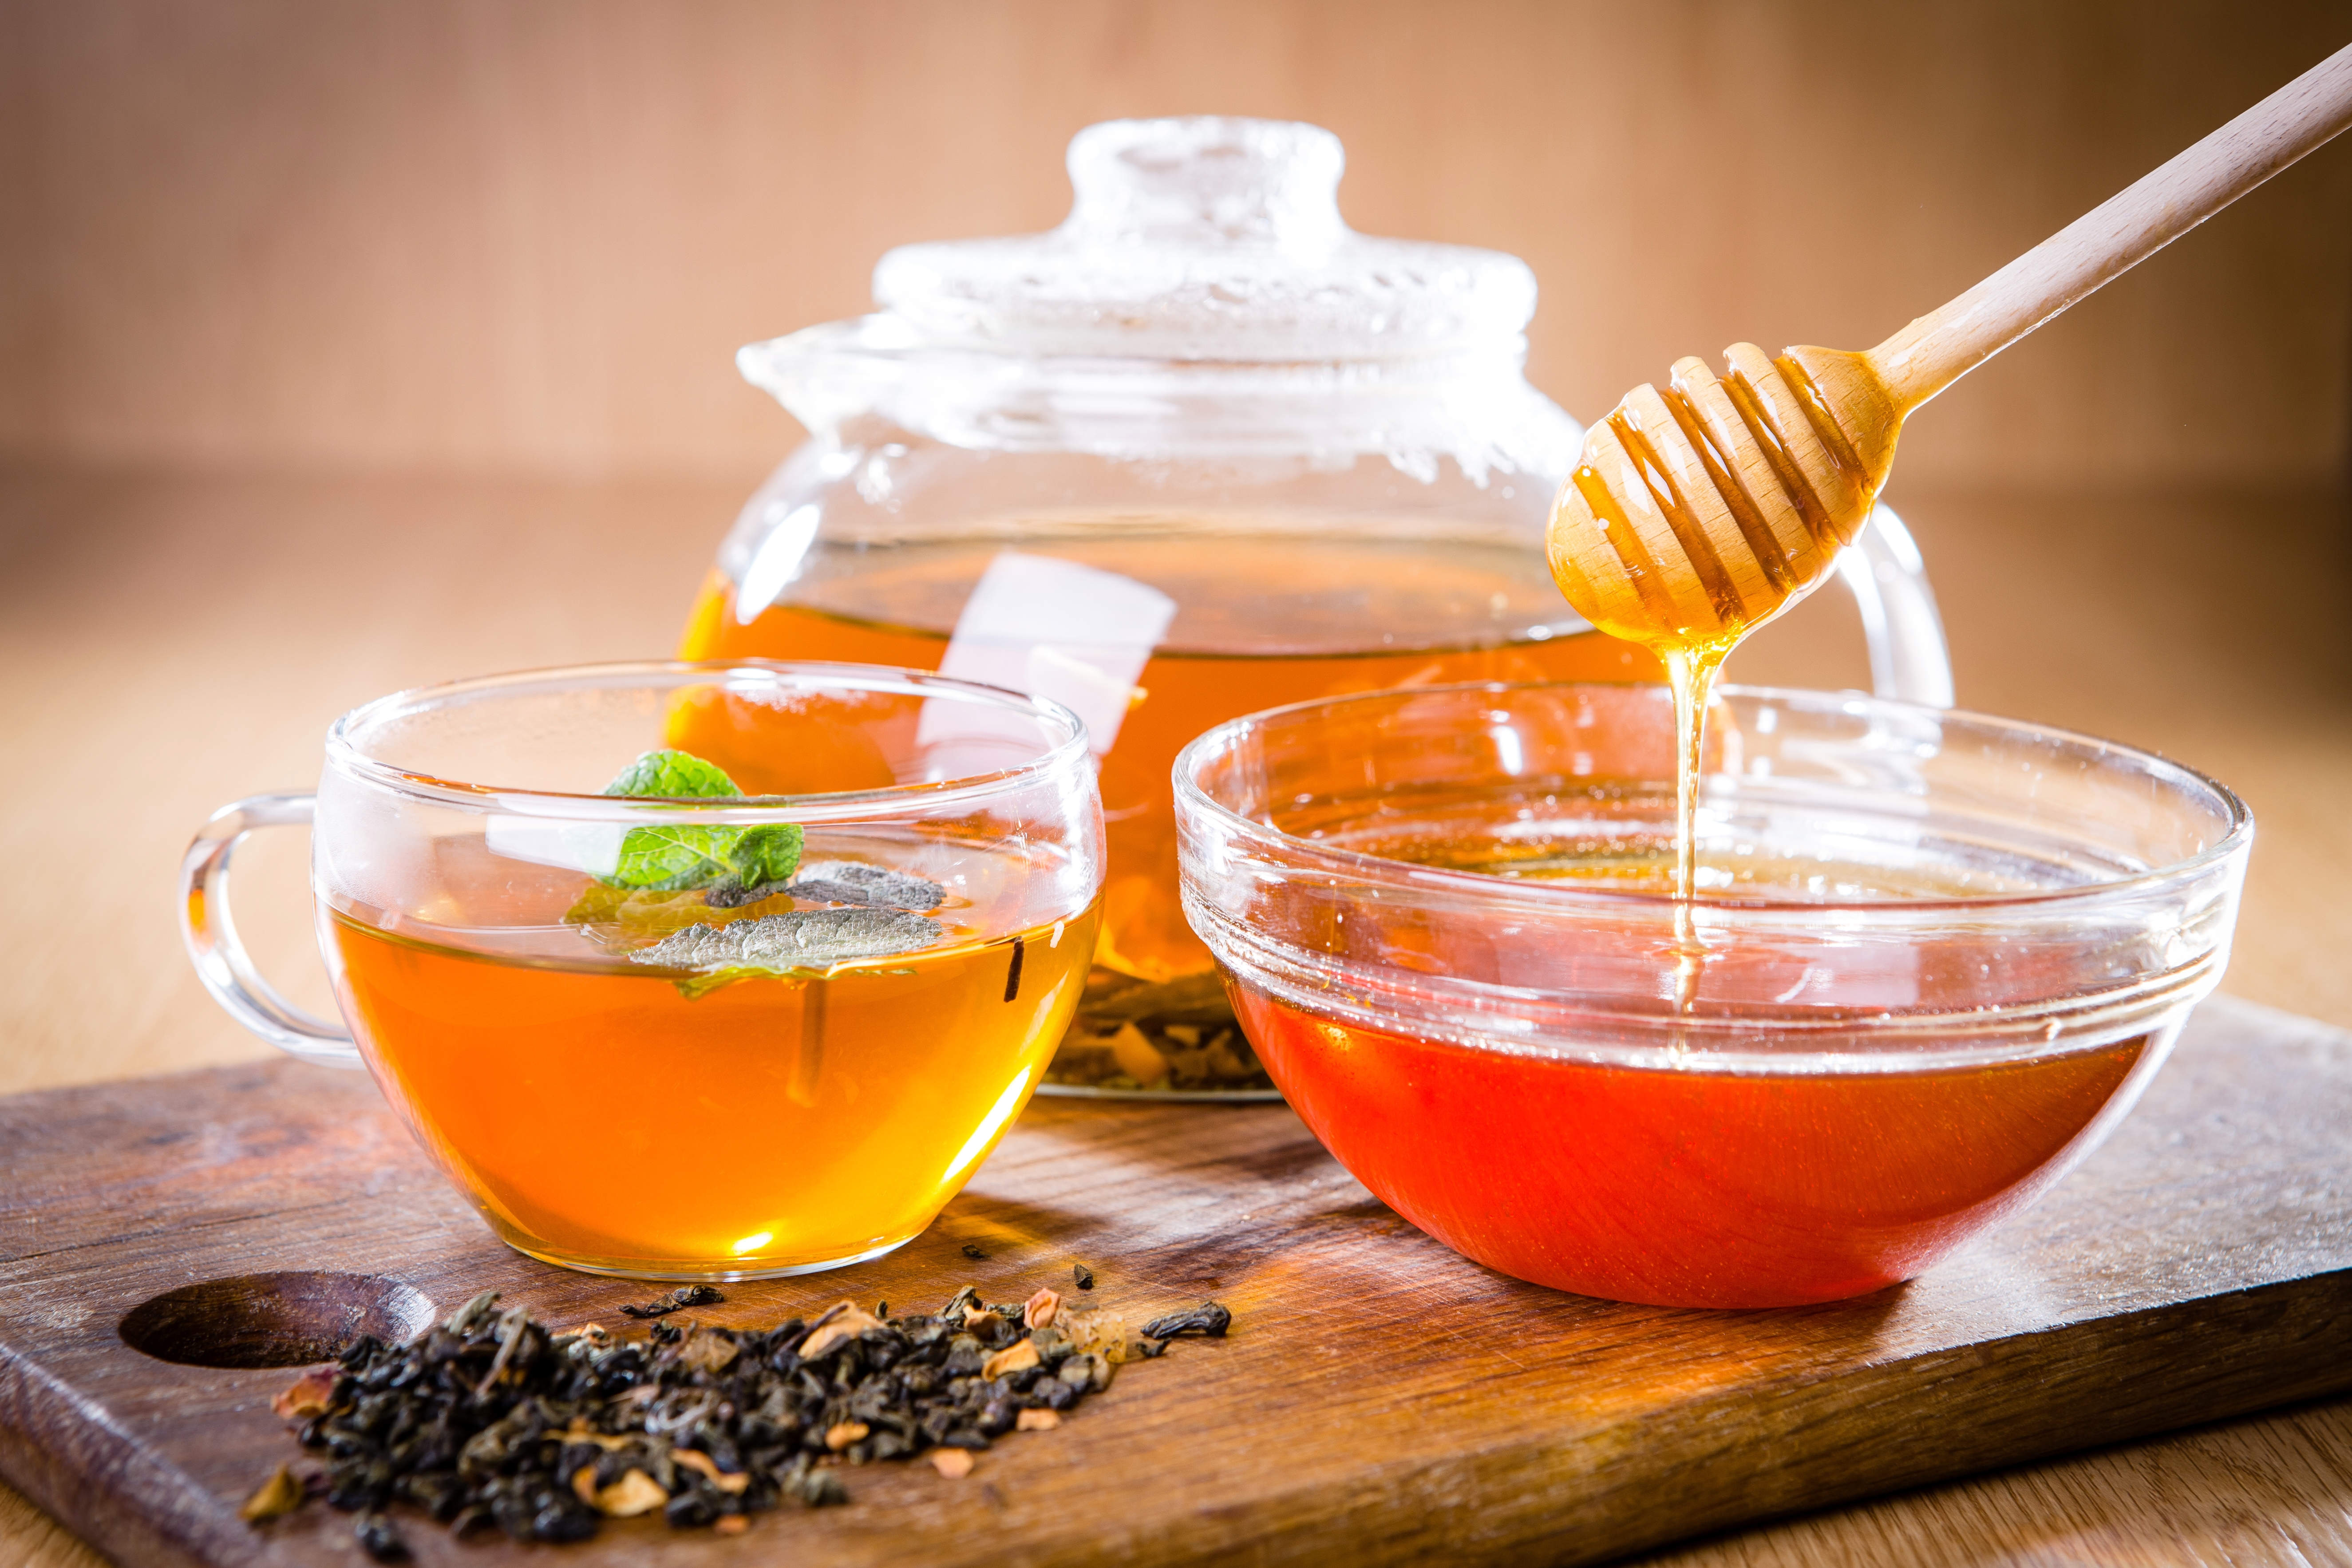 薄荷茶和芬芳的蜂蜜